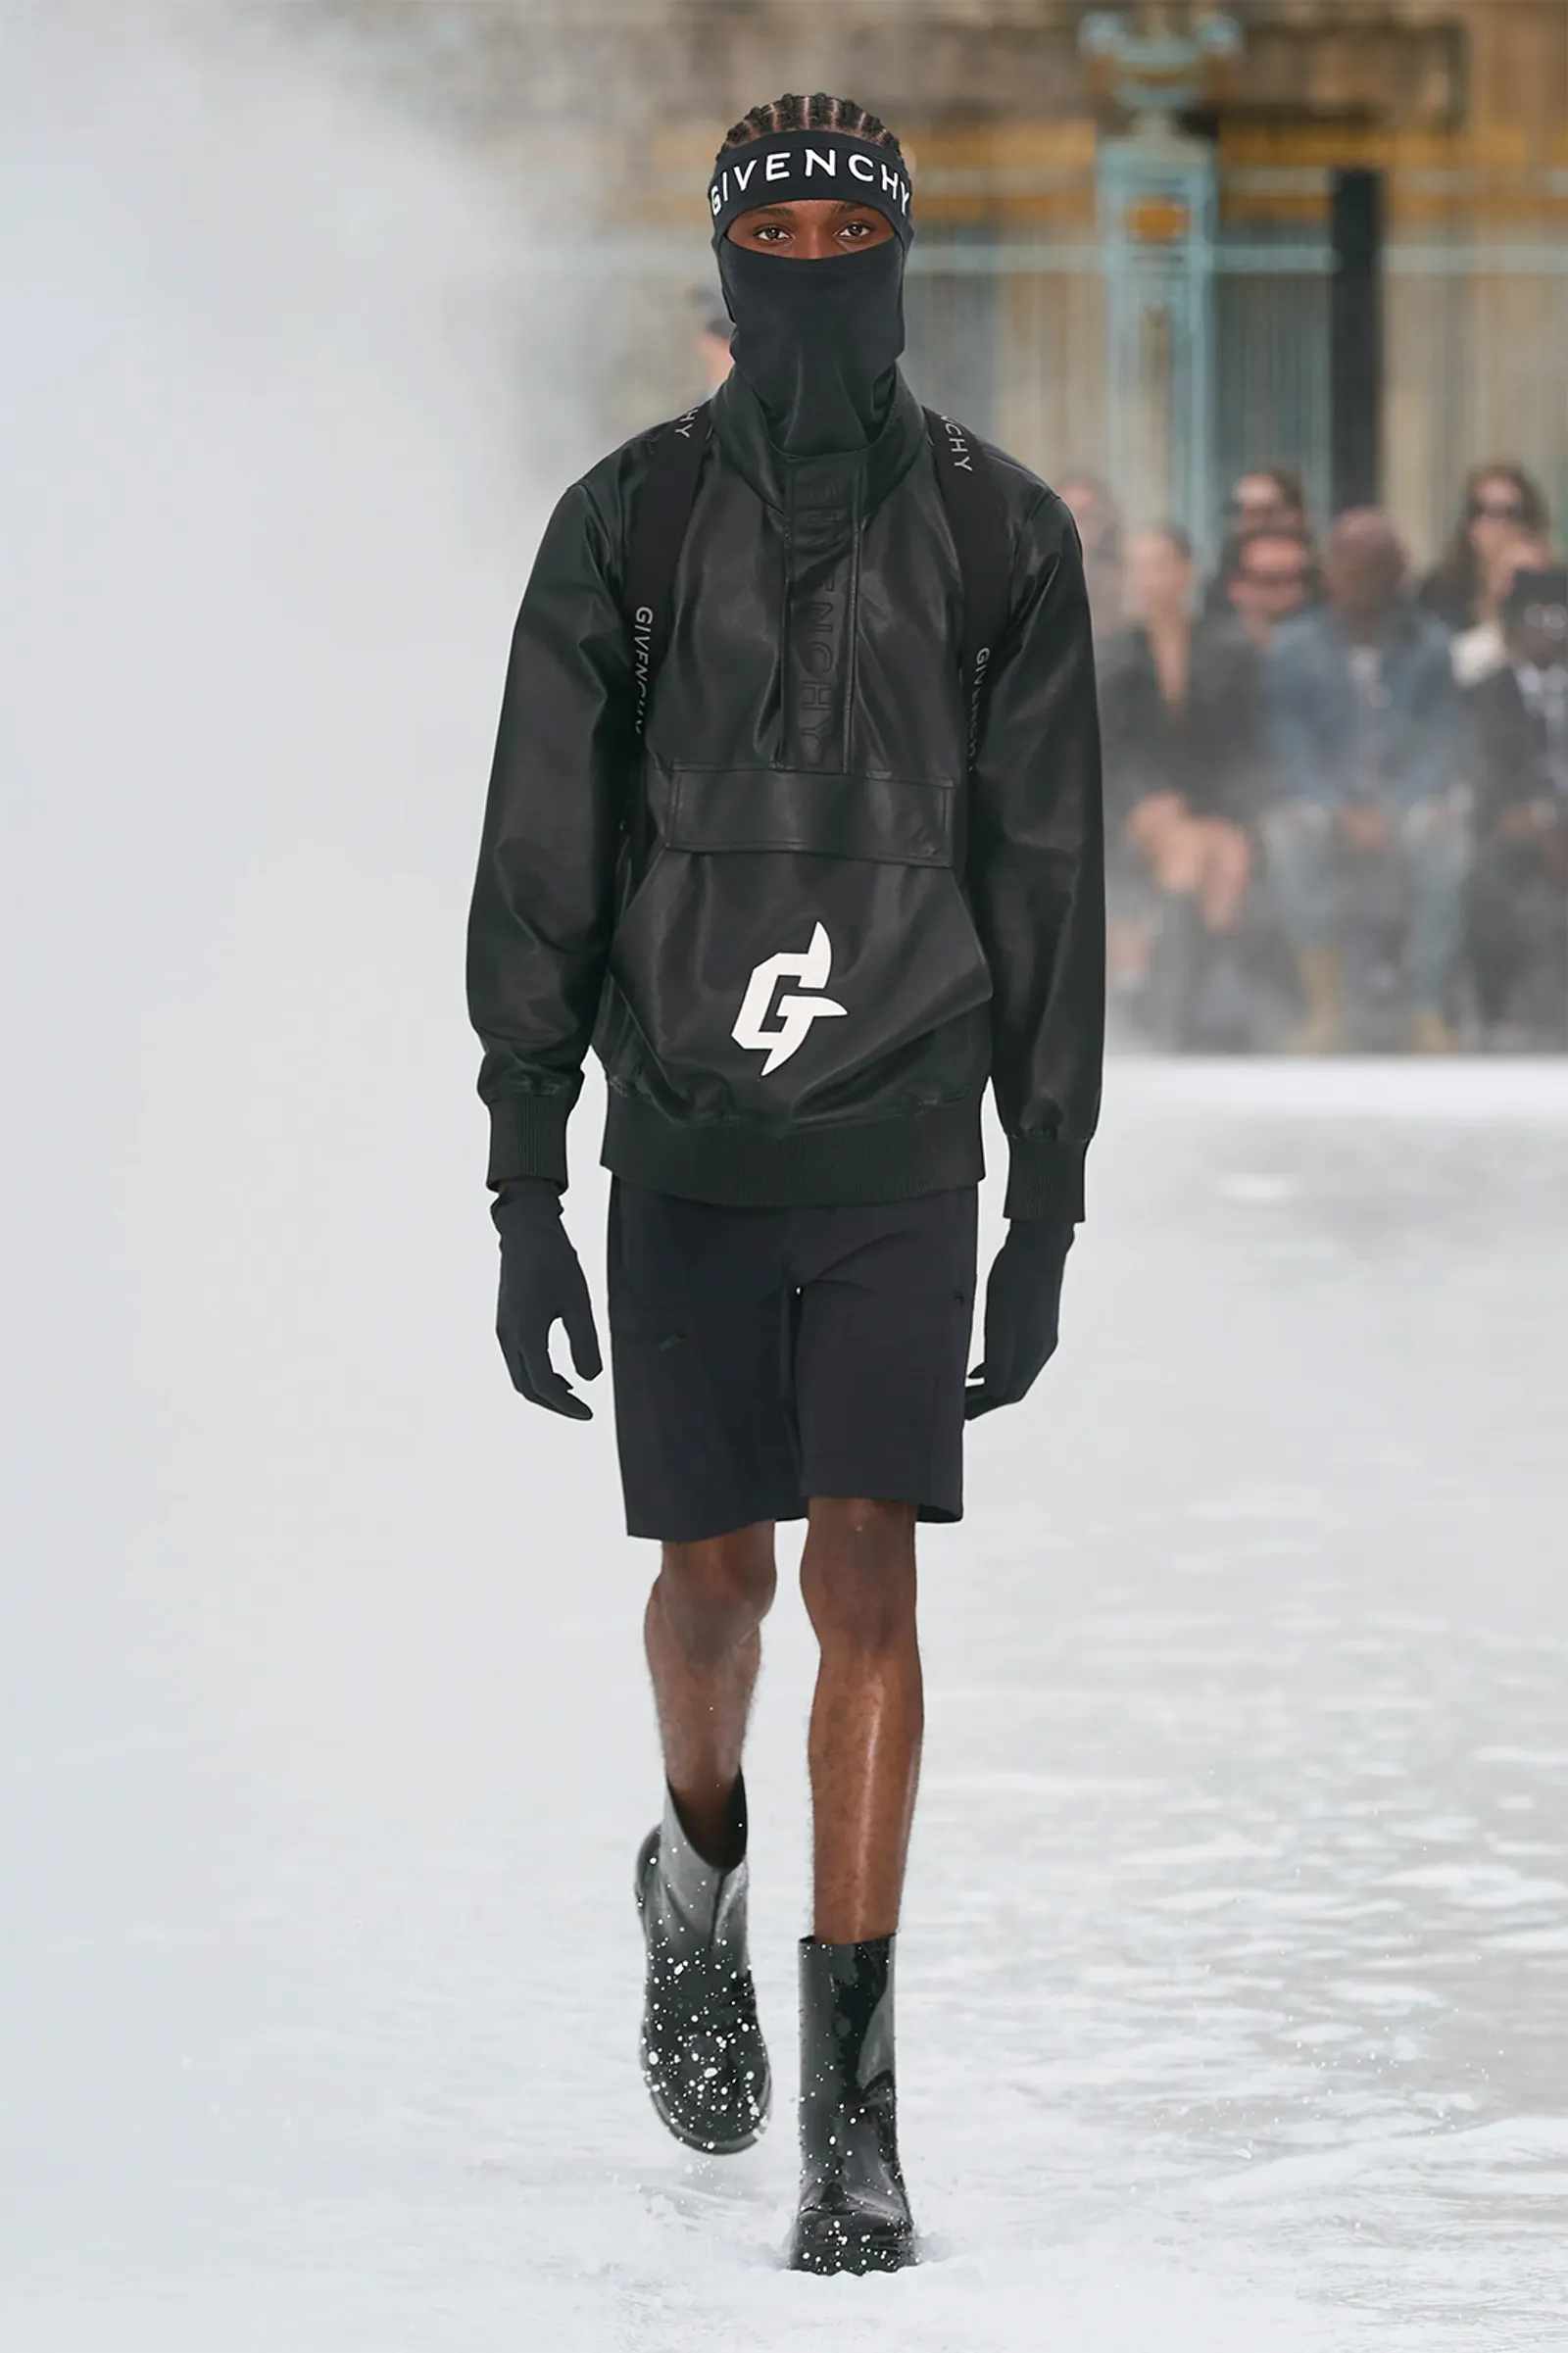 Koleksi Edgy Givenchy Menswear Spring/Summer 2023